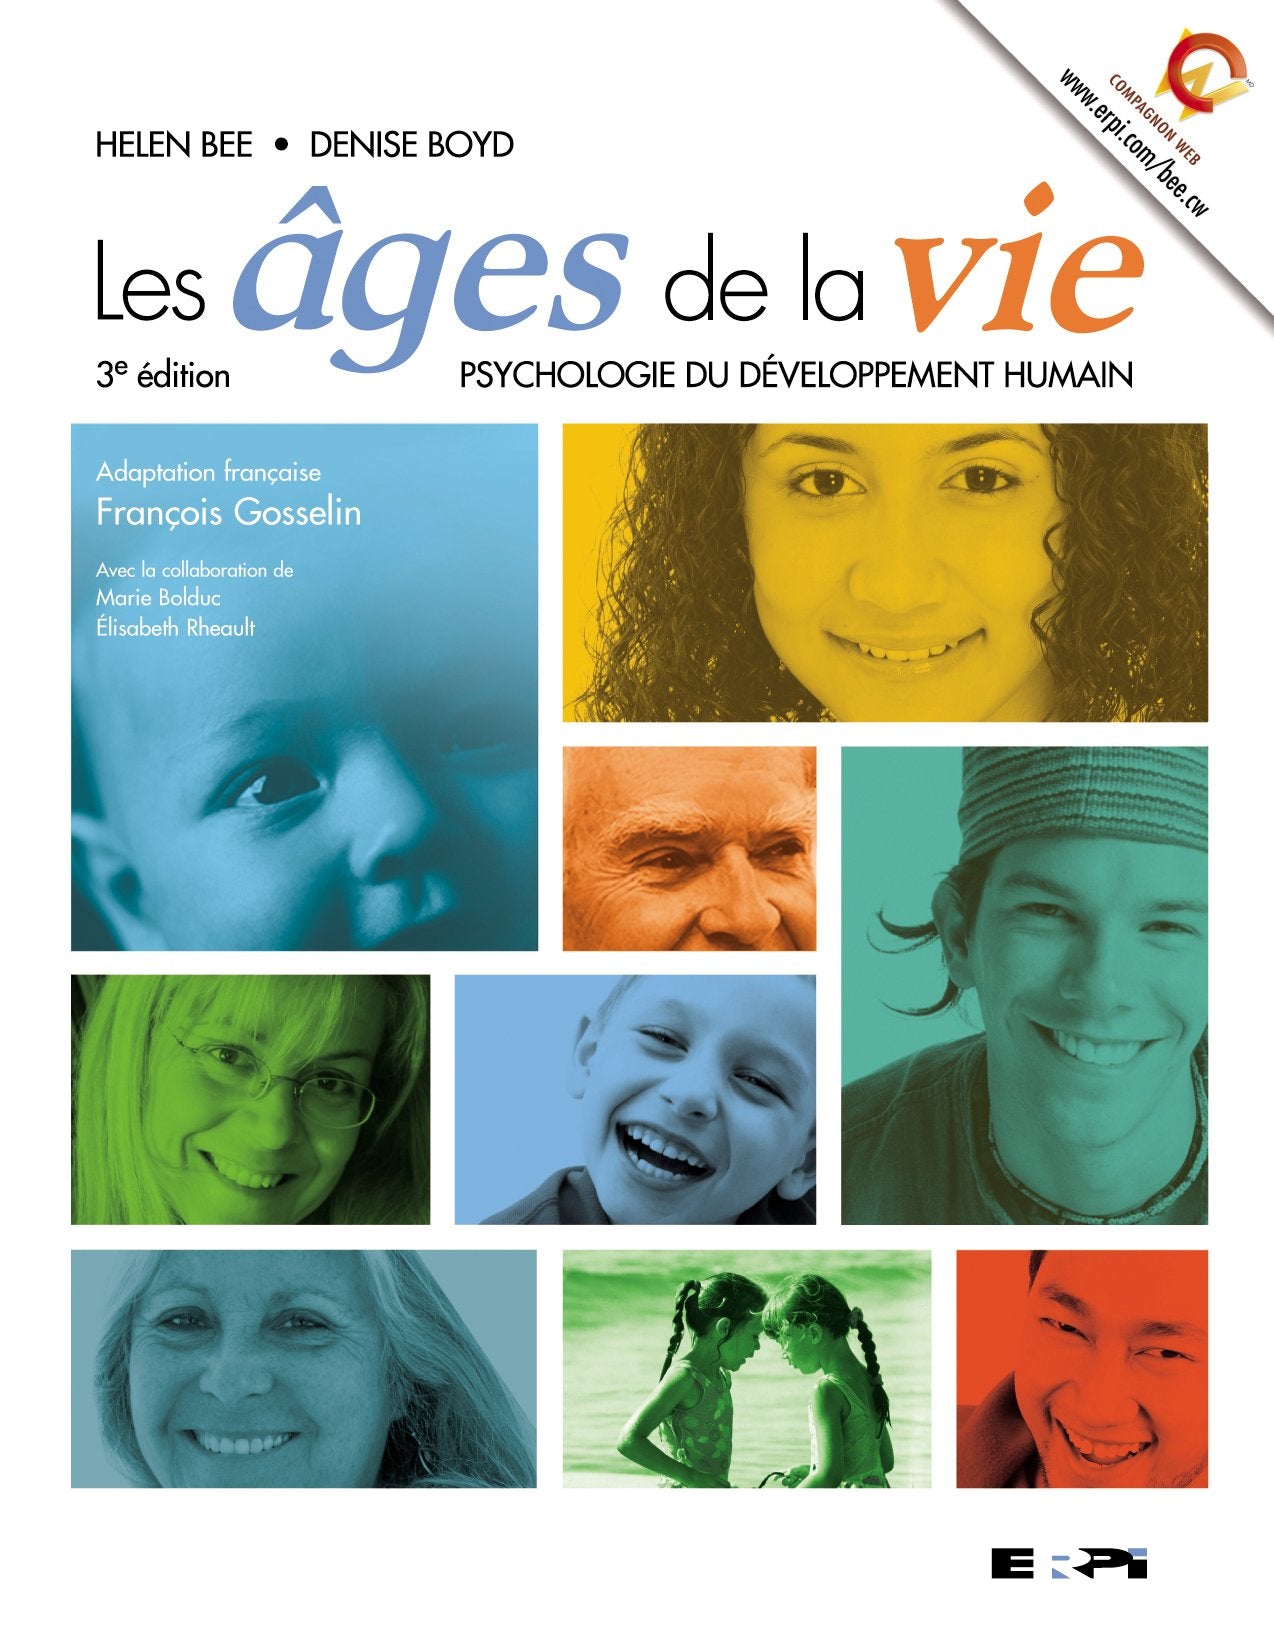 Les âges de la vie: Psychologie du développement humain (3e édition) - Helen L. Bee